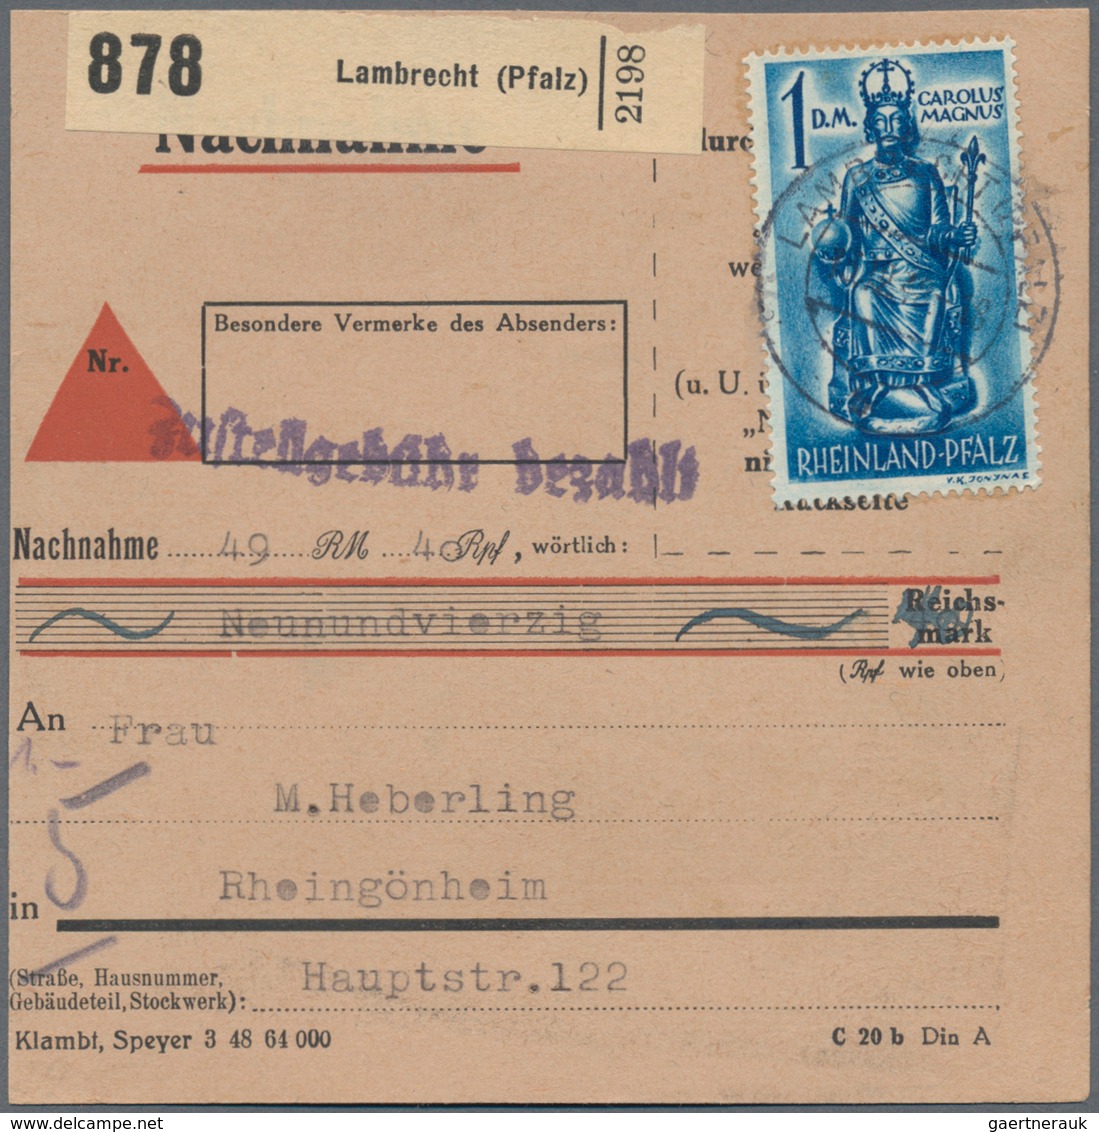 Französische Zone: 1946/1950, vielseitiger Bestand von ca. 660 Briefen und Karten mit Allg.Ausgabe u